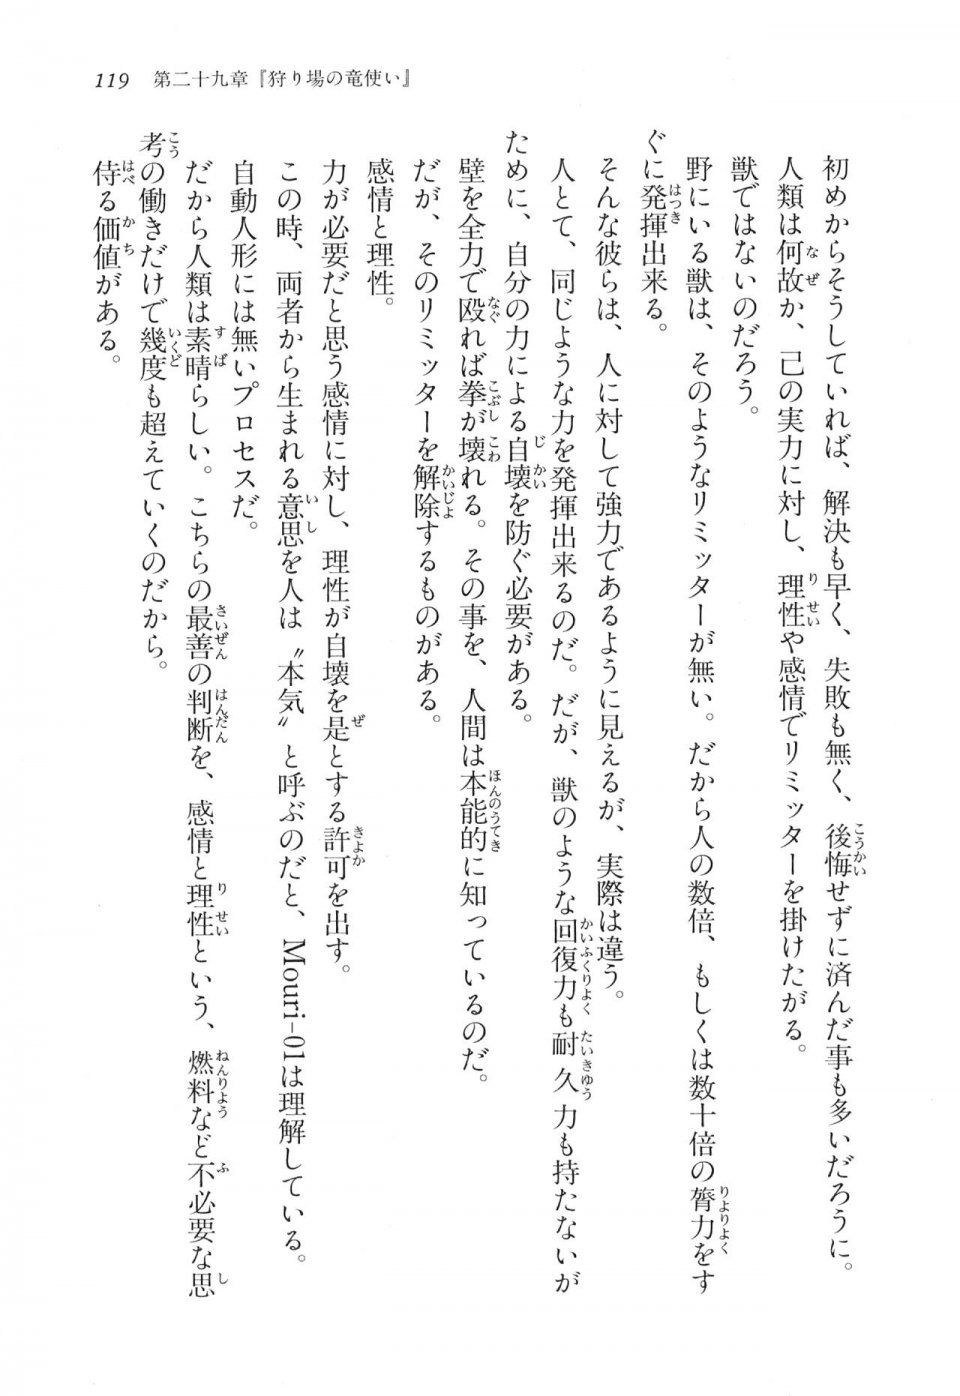 Kyoukai Senjou no Horizon LN Vol 17(7B) - Photo #119